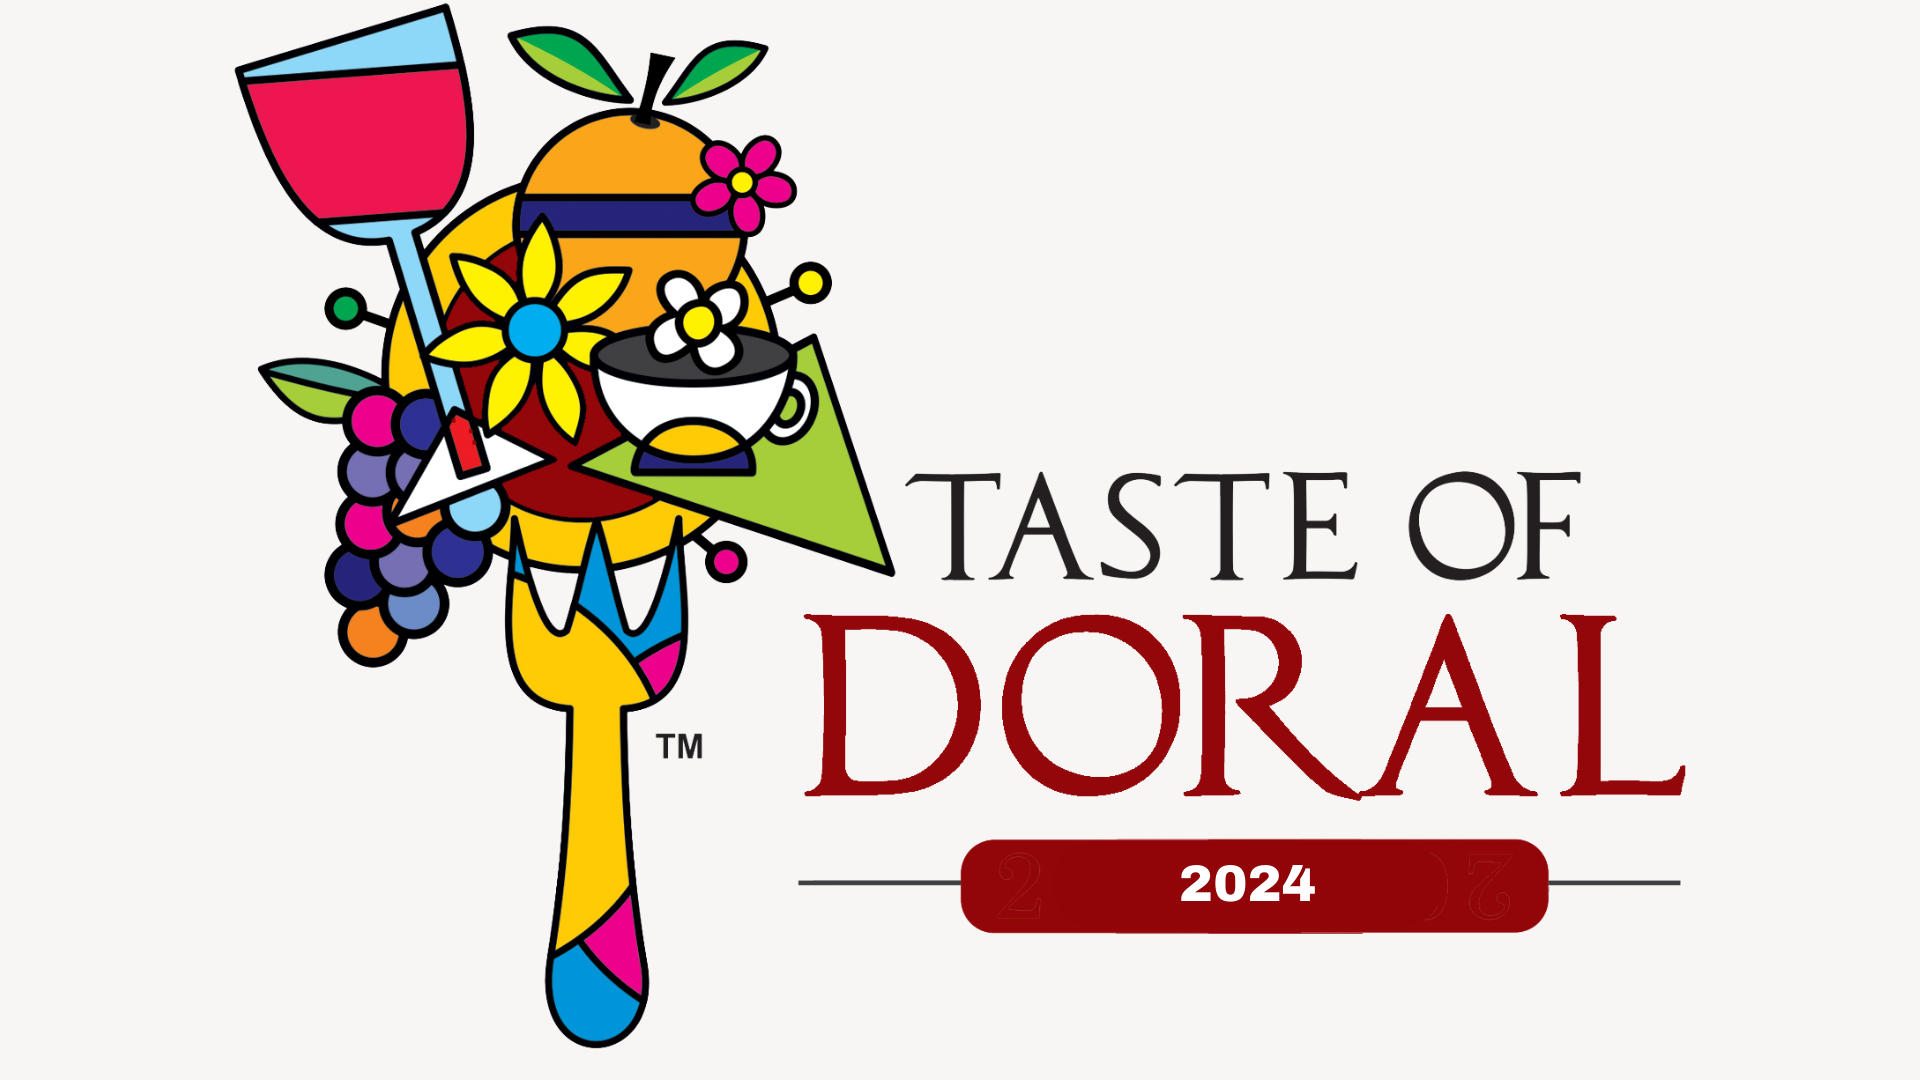 Taste of Doral / Doral Restaurant Week 2023. Featuring Doral's Best Restaurants.